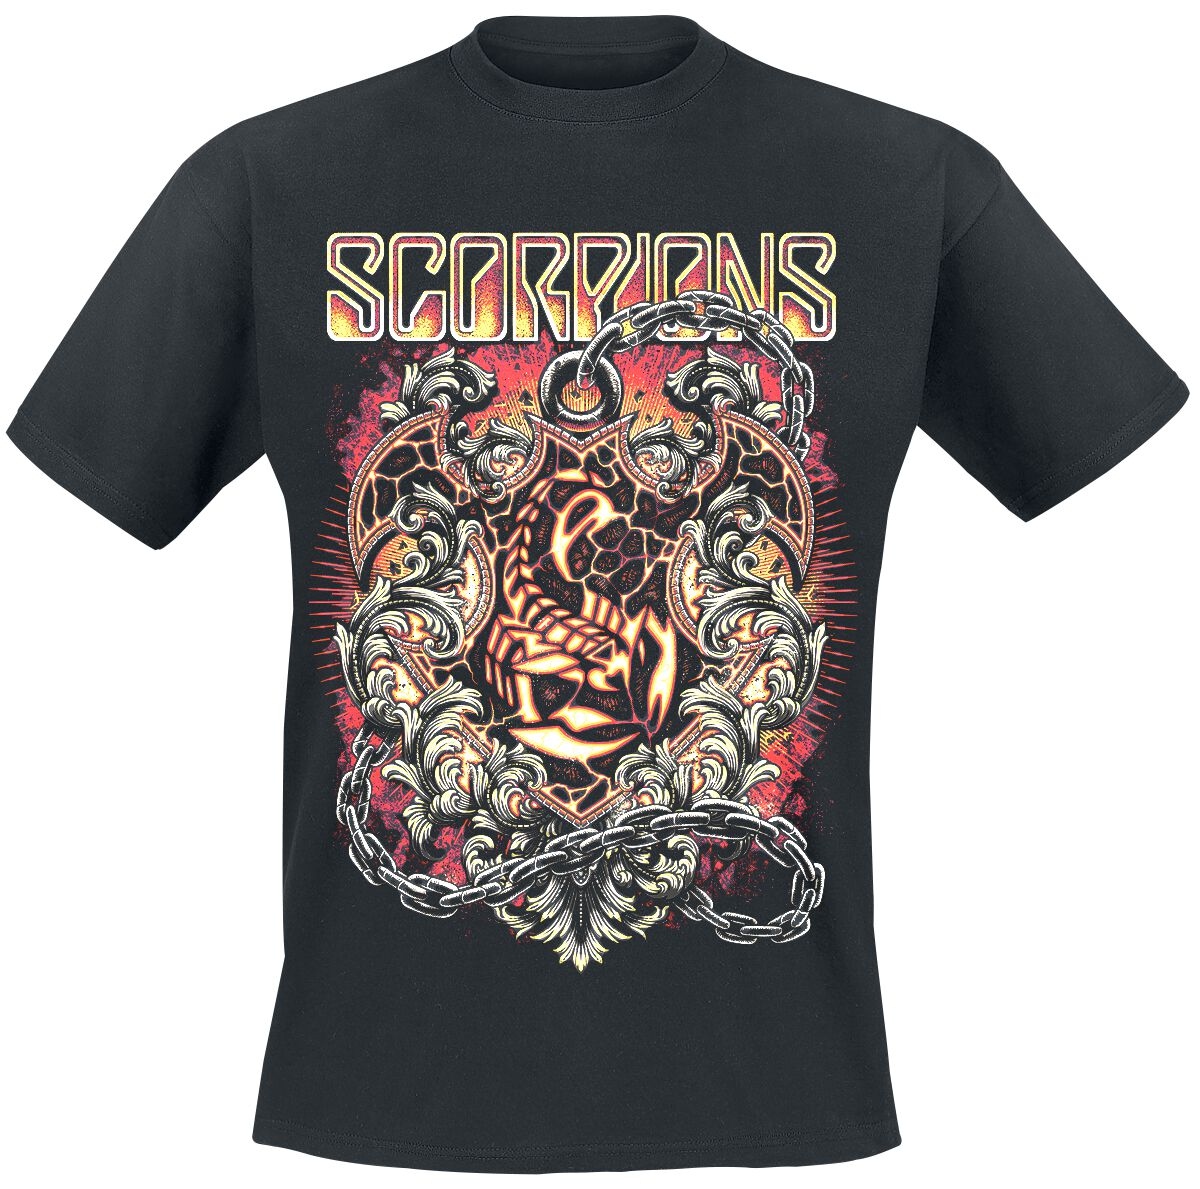 Scorpions T-Shirt - Crest In Chains - M bis 3XL - für Männer - Größe L - schwarz  - Lizenziertes Merchandise!